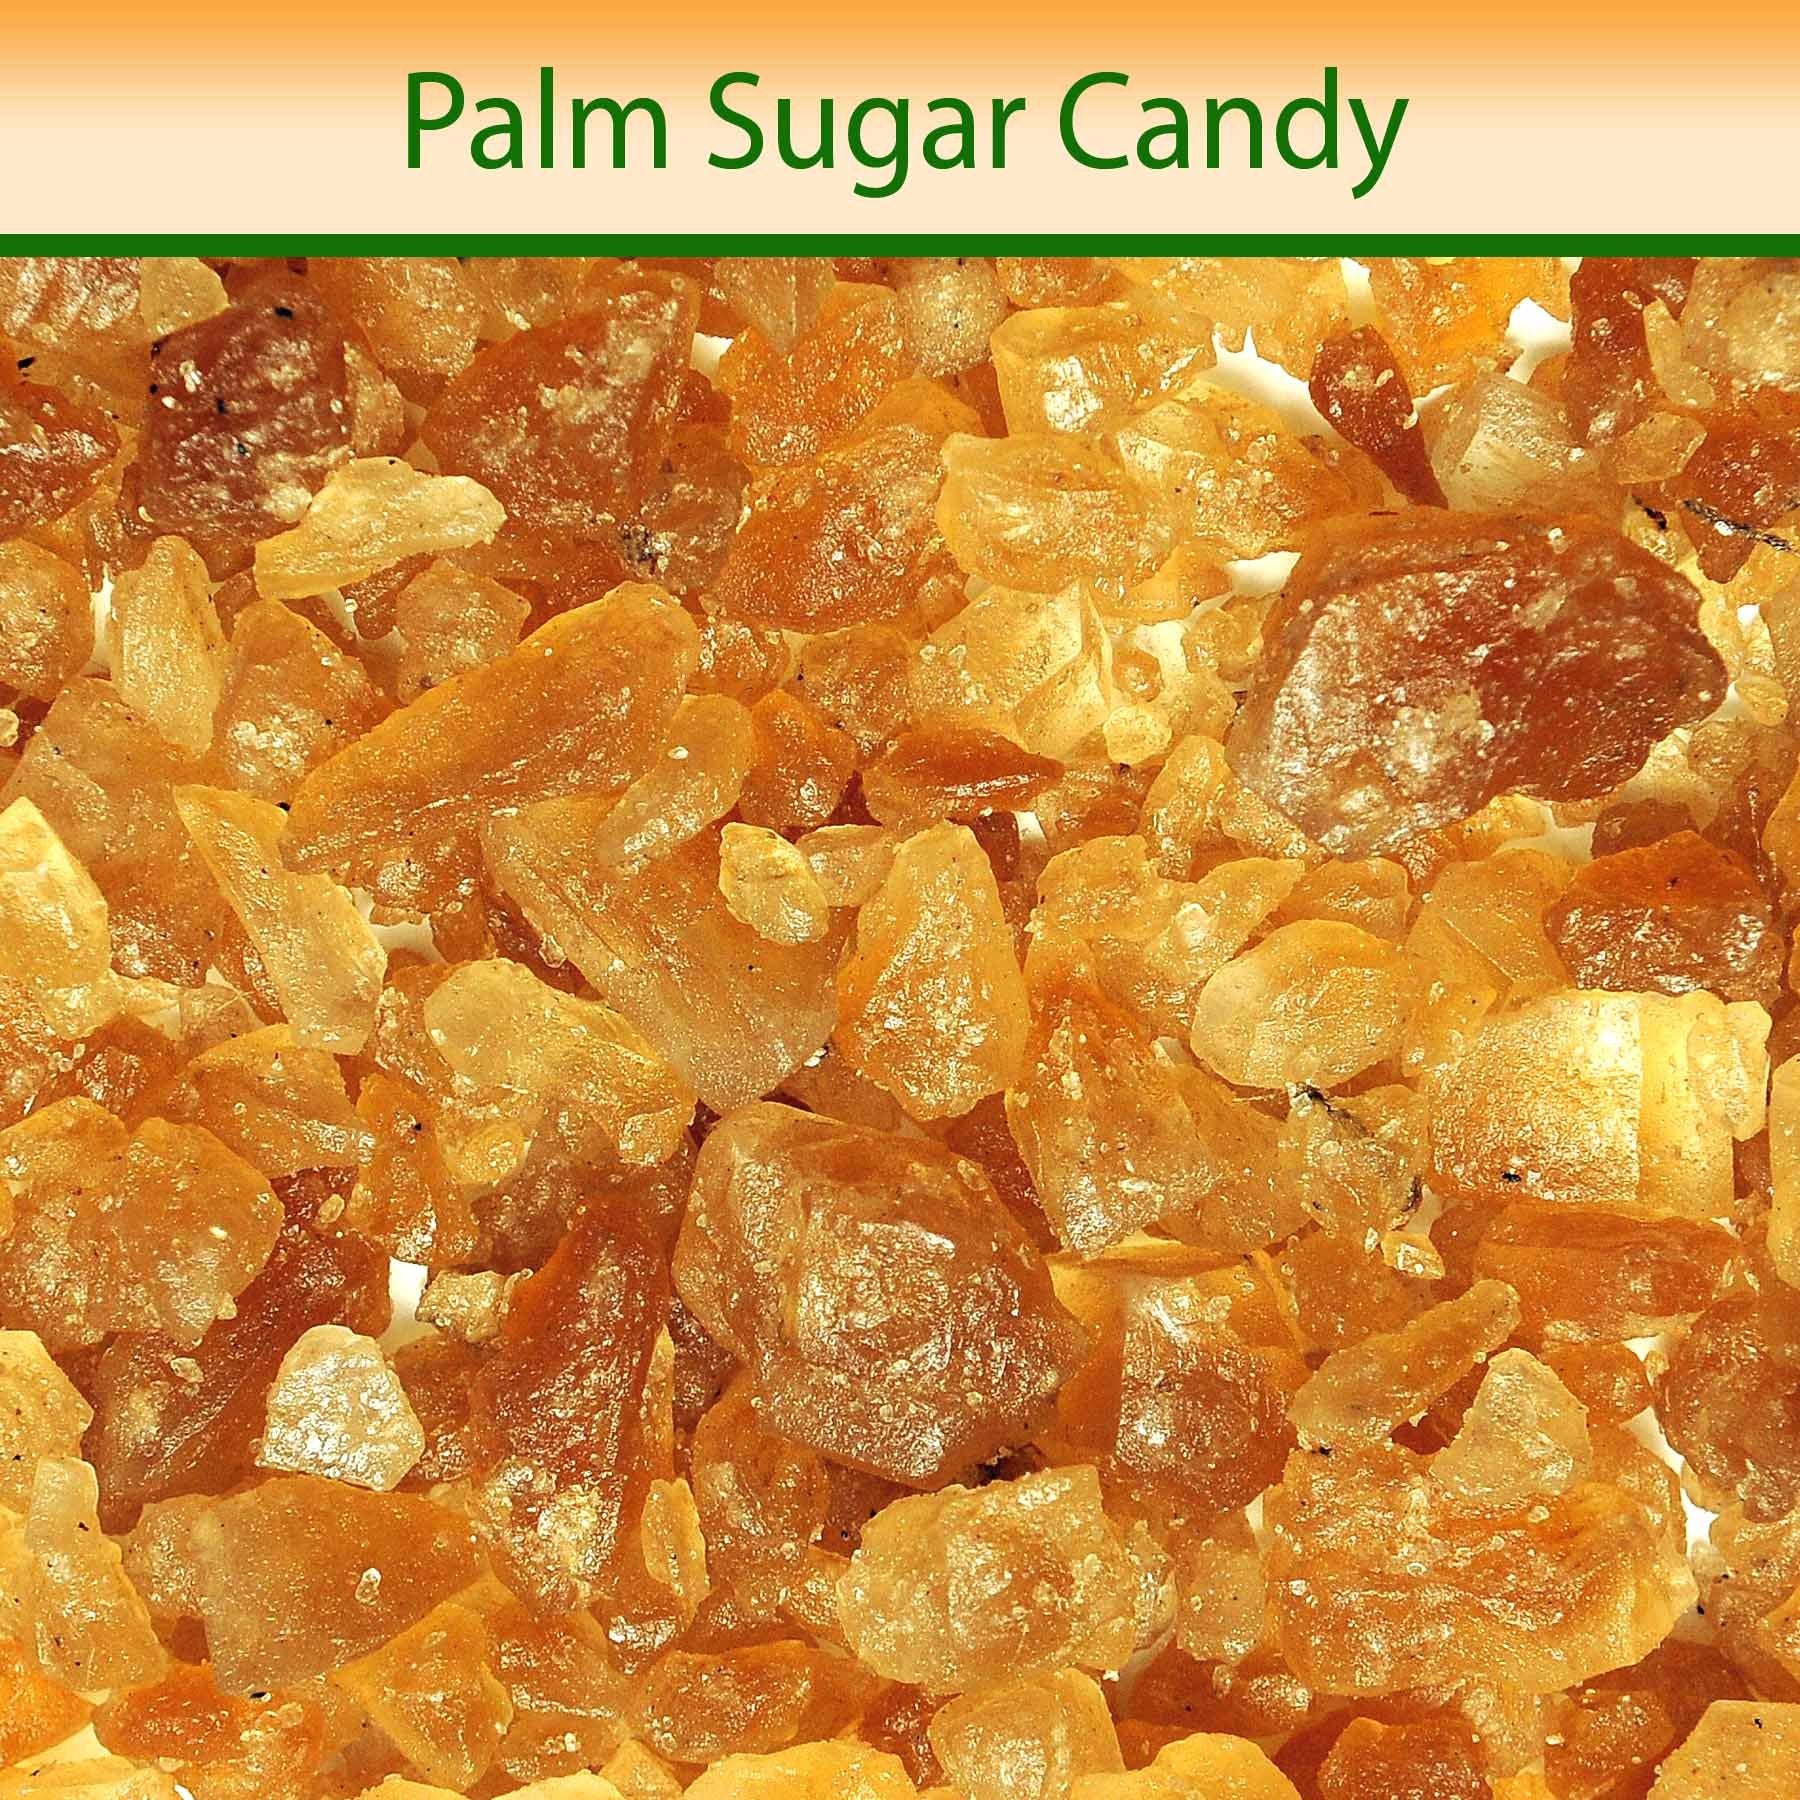 Palm Sugar Candy - Mangalore Spice